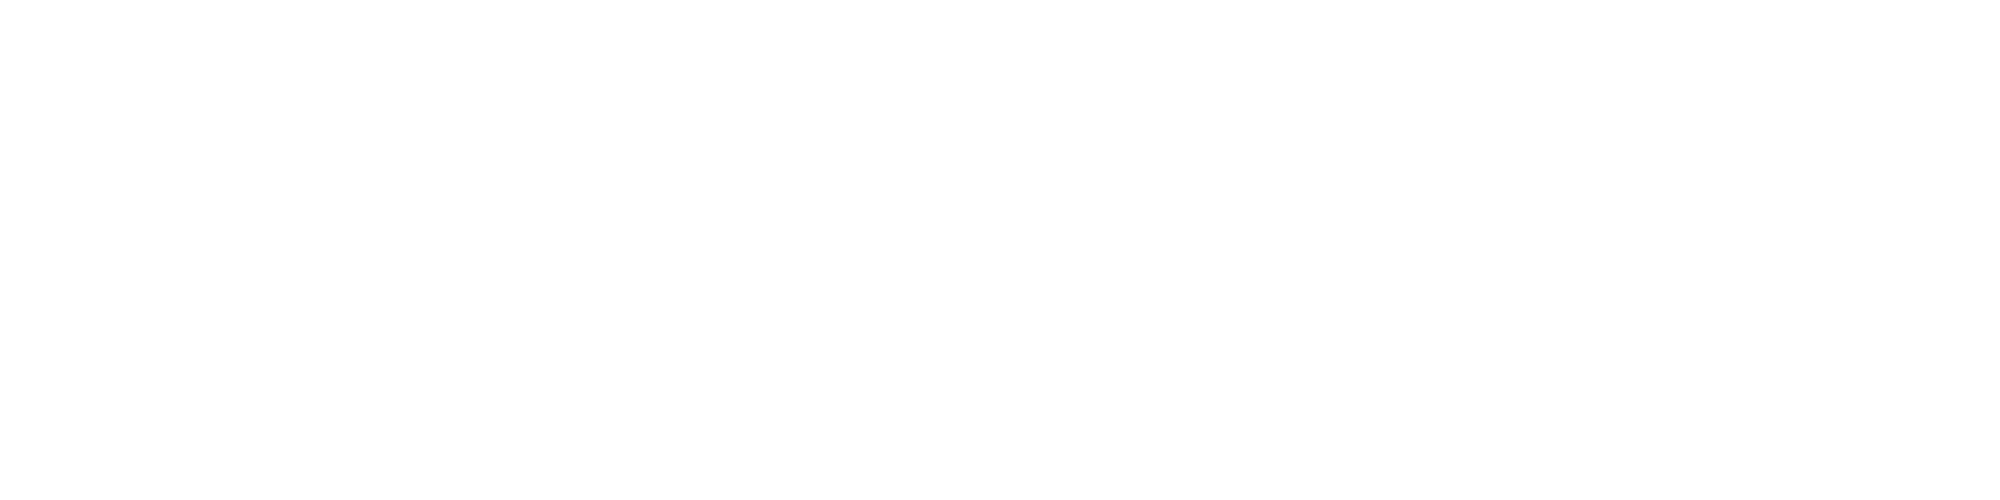 初回生産限定盤 M O T T E G Dragon Iii Iii Tour Book ジードラゴン Cd Dvd 送料無料 初回生産限定盤 Hmv Books Bigbang Act G Dragon 1号店 World Dvd 17 In 2dvd 2cd Photo Japan Online 開梱設置 無料 Dvd